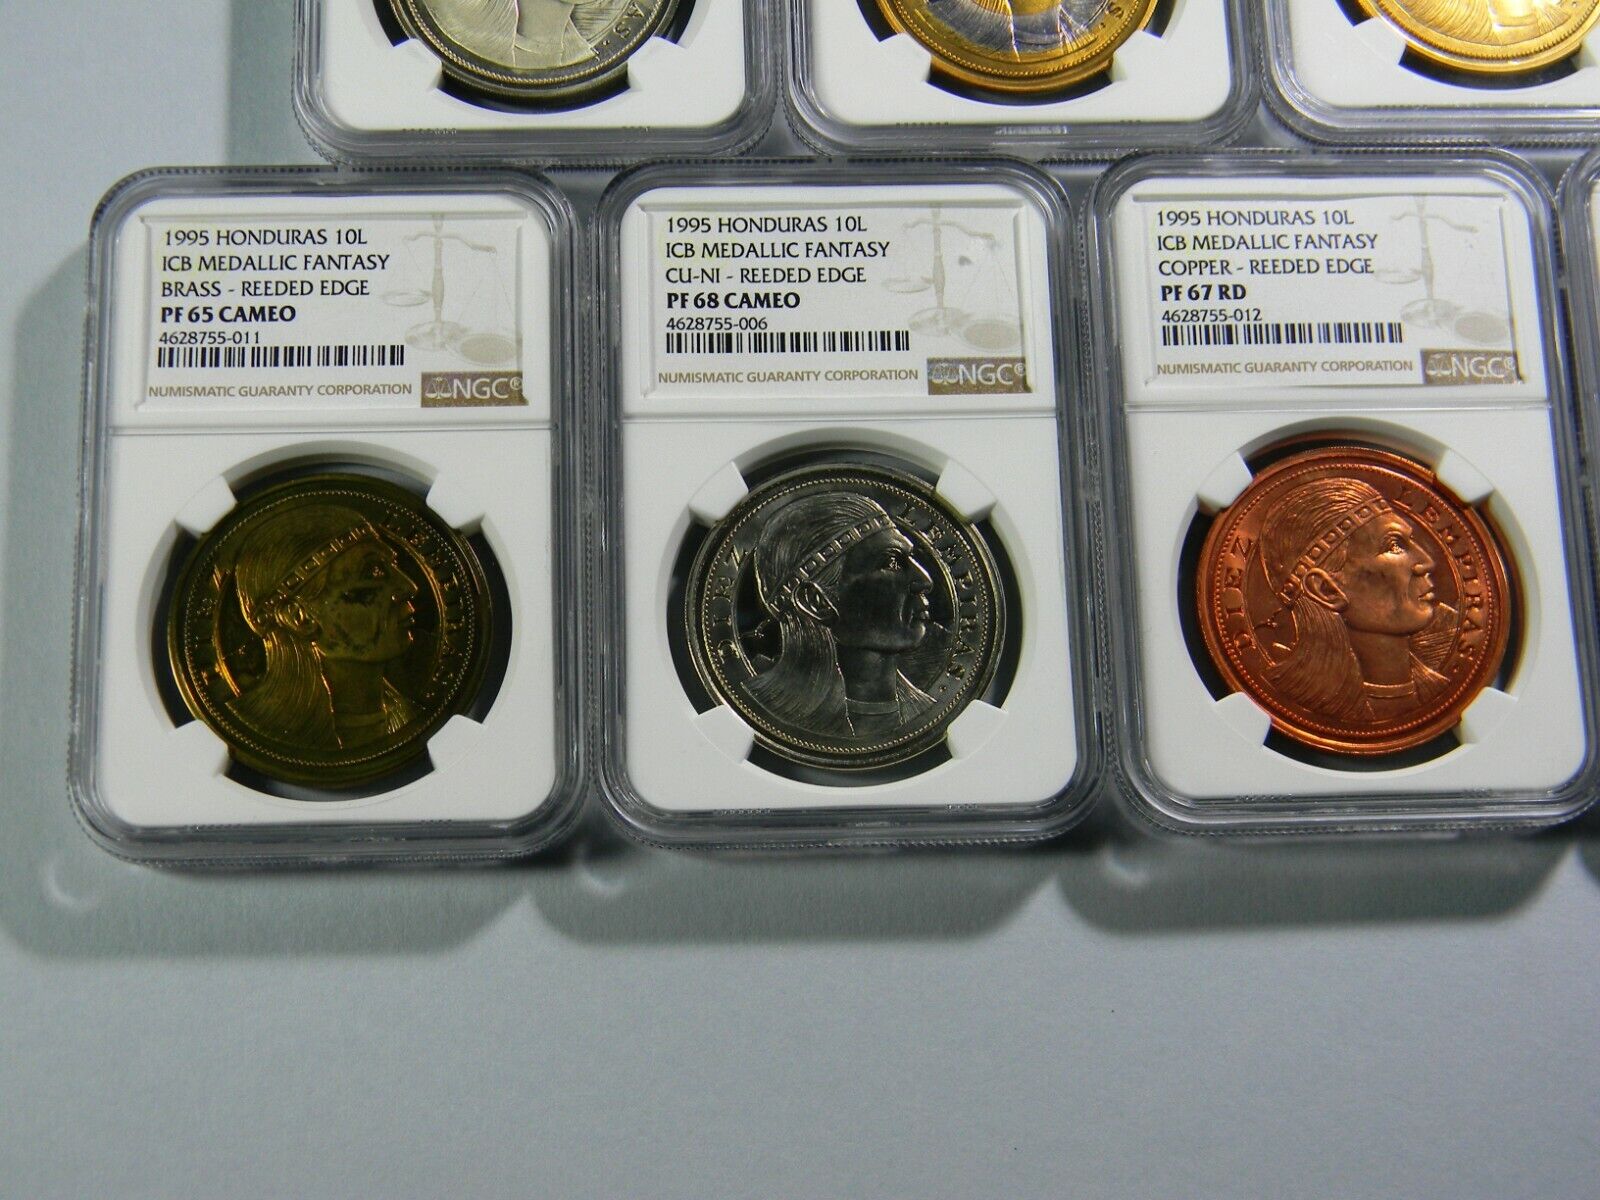 1995 Honduras 10 Lempiras 7 coin Lot NGC Certified  Без бренда - фотография #4